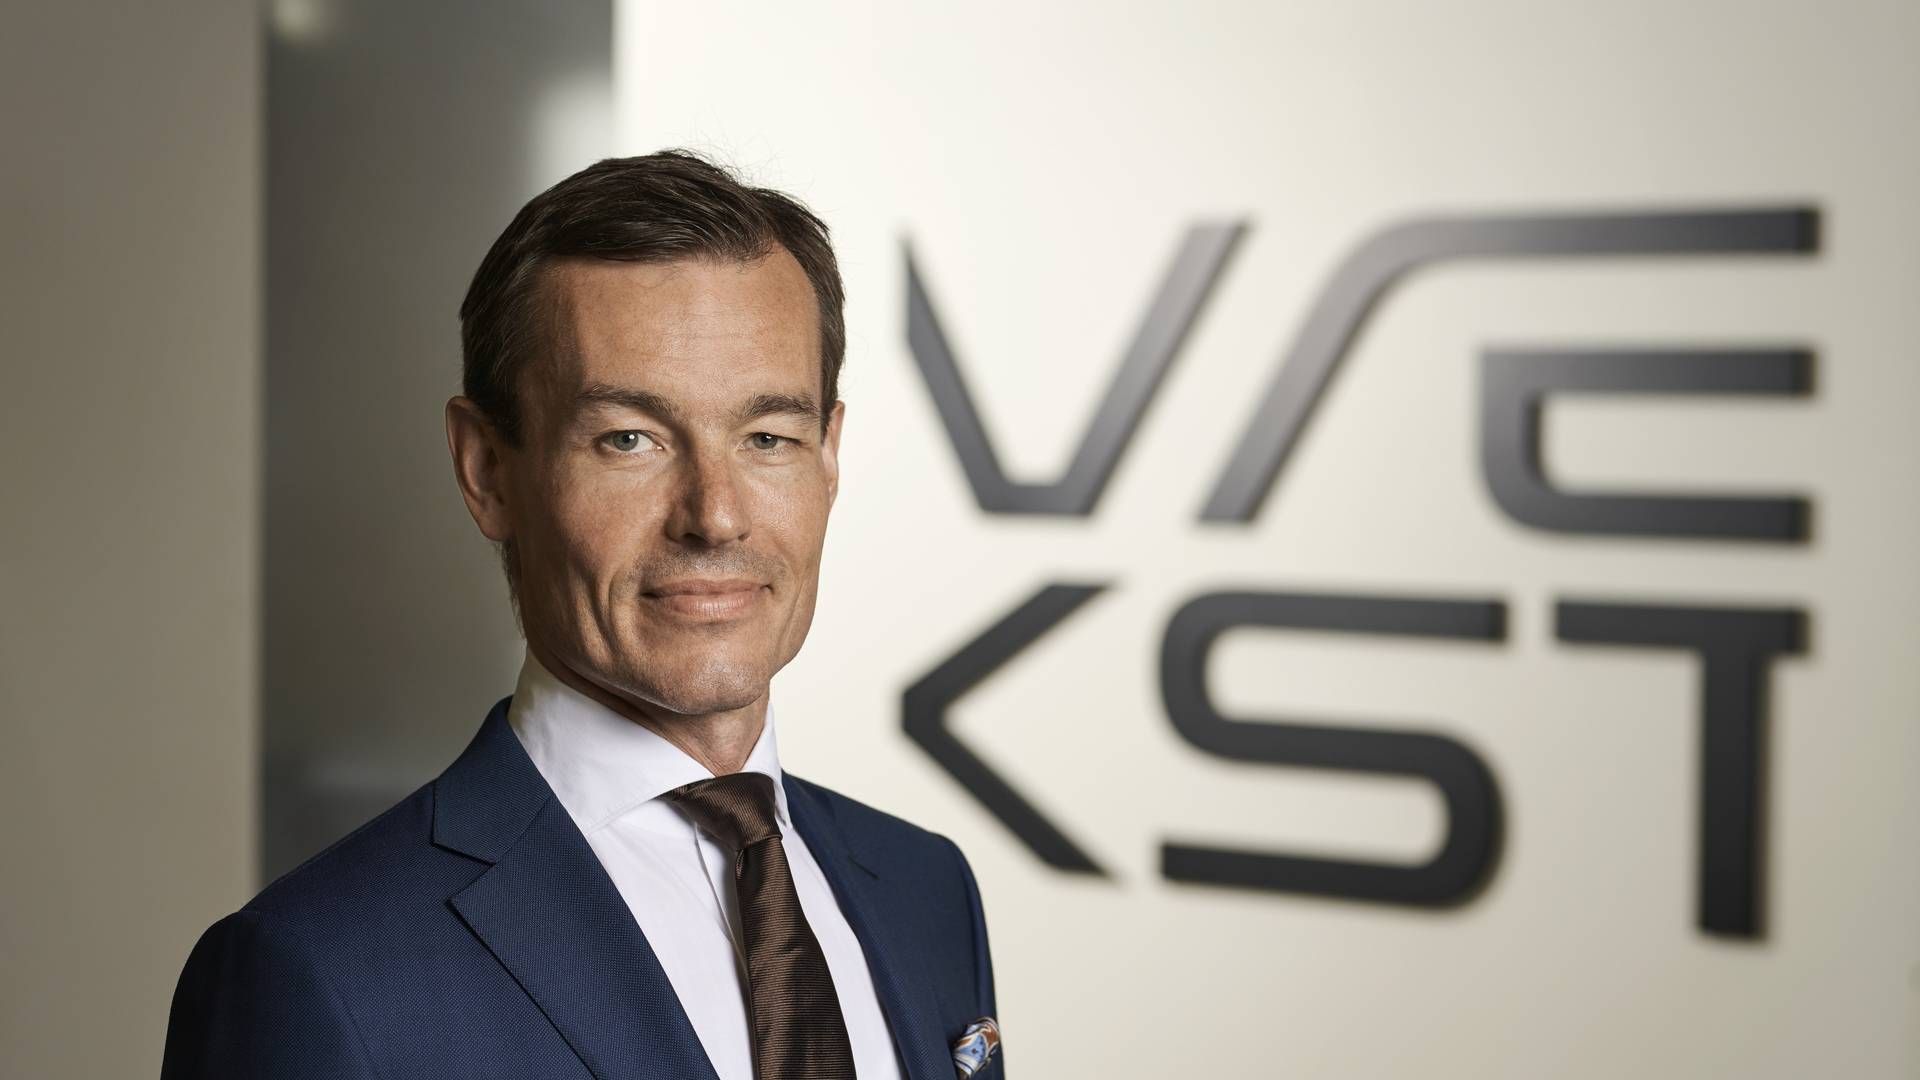 Ifølge Vækstfonden, med her adm. direktør Rolf Kjærgaard, har der været skub på ventureinvesteringerne i andet kvartal. | Foto: PRVækstfonden